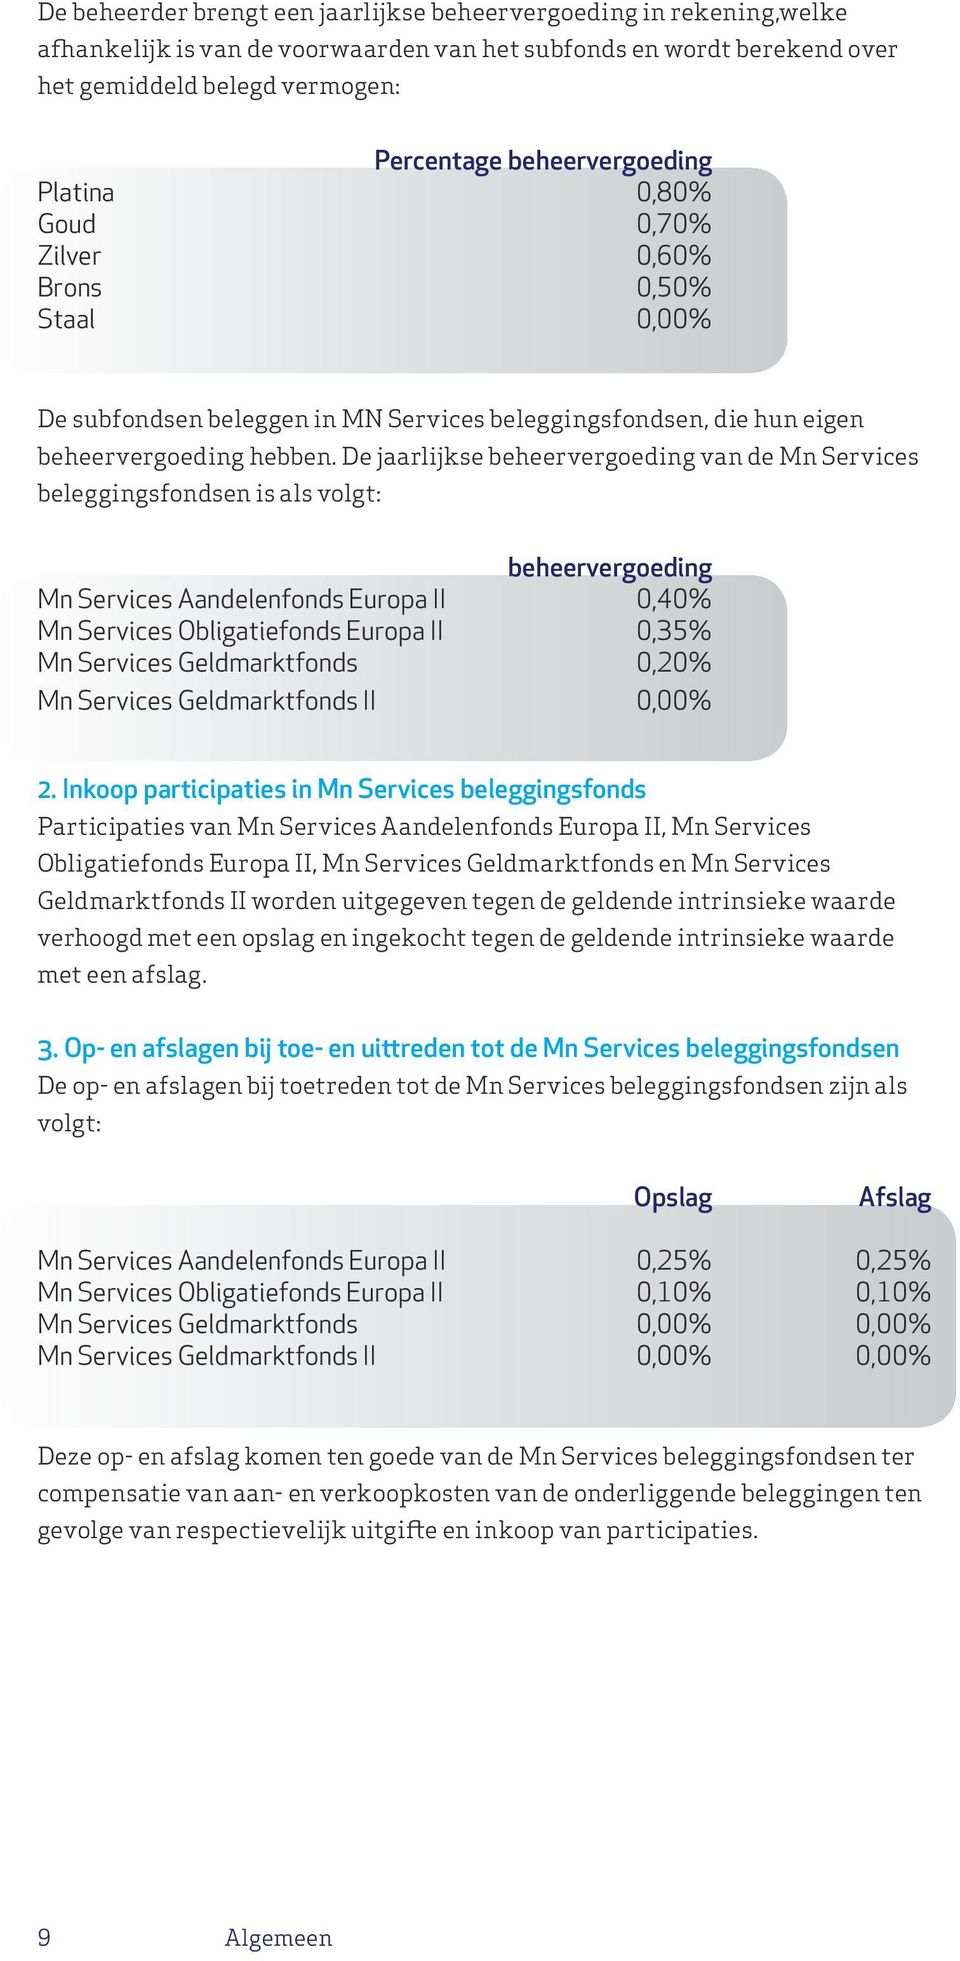 De jaarlijkse beheervergoeding van de Mn Services beleggingsfondsen is als volgt: beheervergoeding Mn Services Aandelenfonds Europa II 0,40% Mn Services Obligatiefonds Europa II 0,35% Mn Services